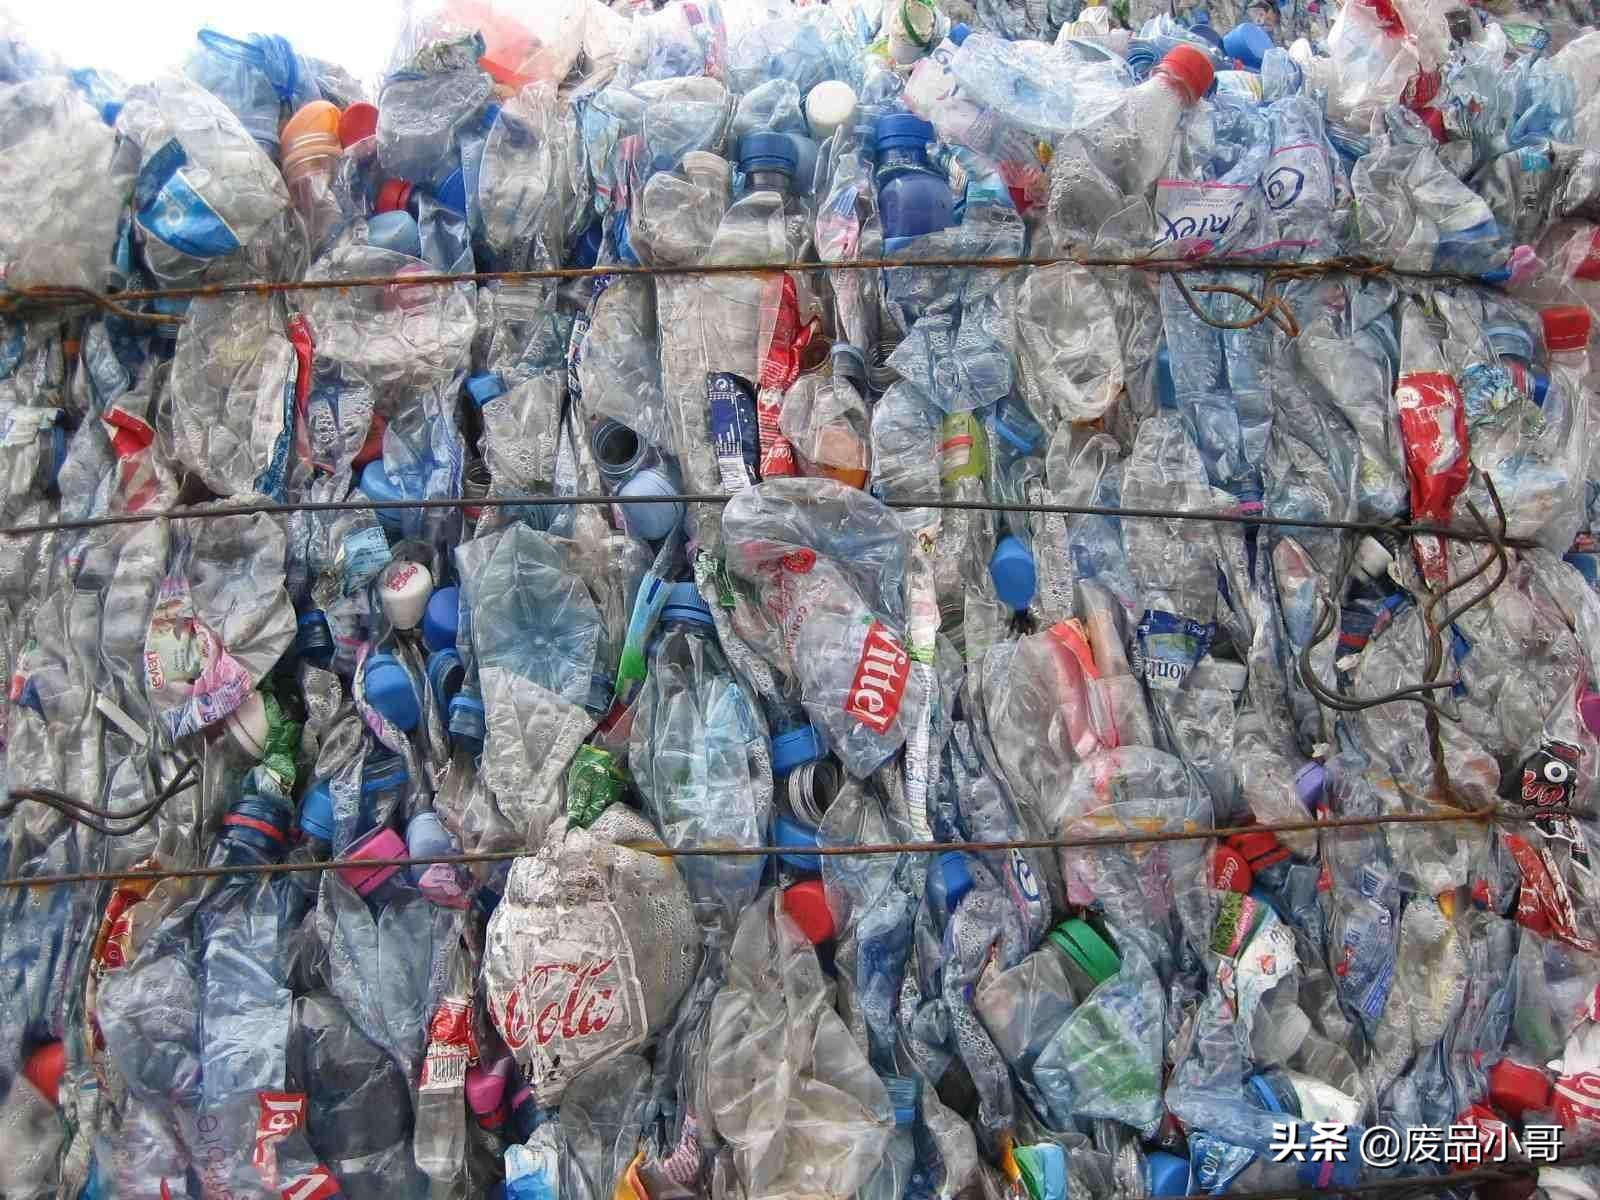 PP、PVC、ABS、PS废塑料回收价格信息2022年4月1日最高上调200元